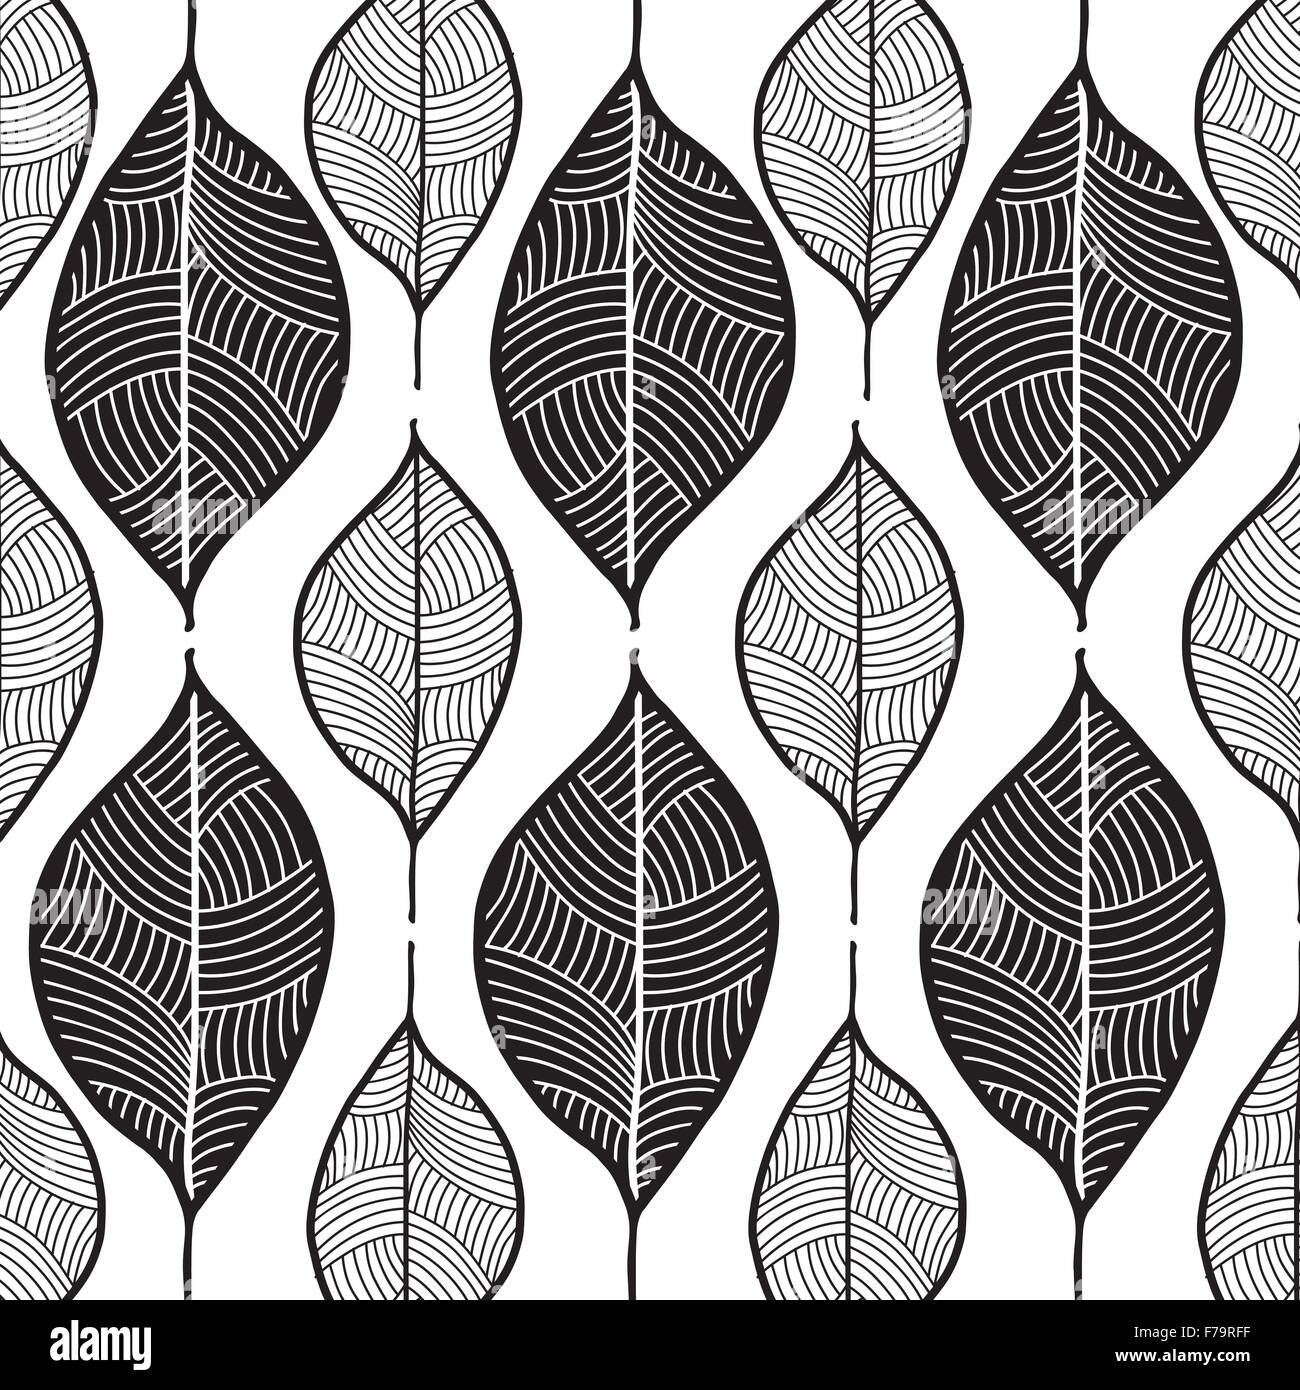 leaf pattern hand drawn sketch doodle illustration black on white background Stock Vector